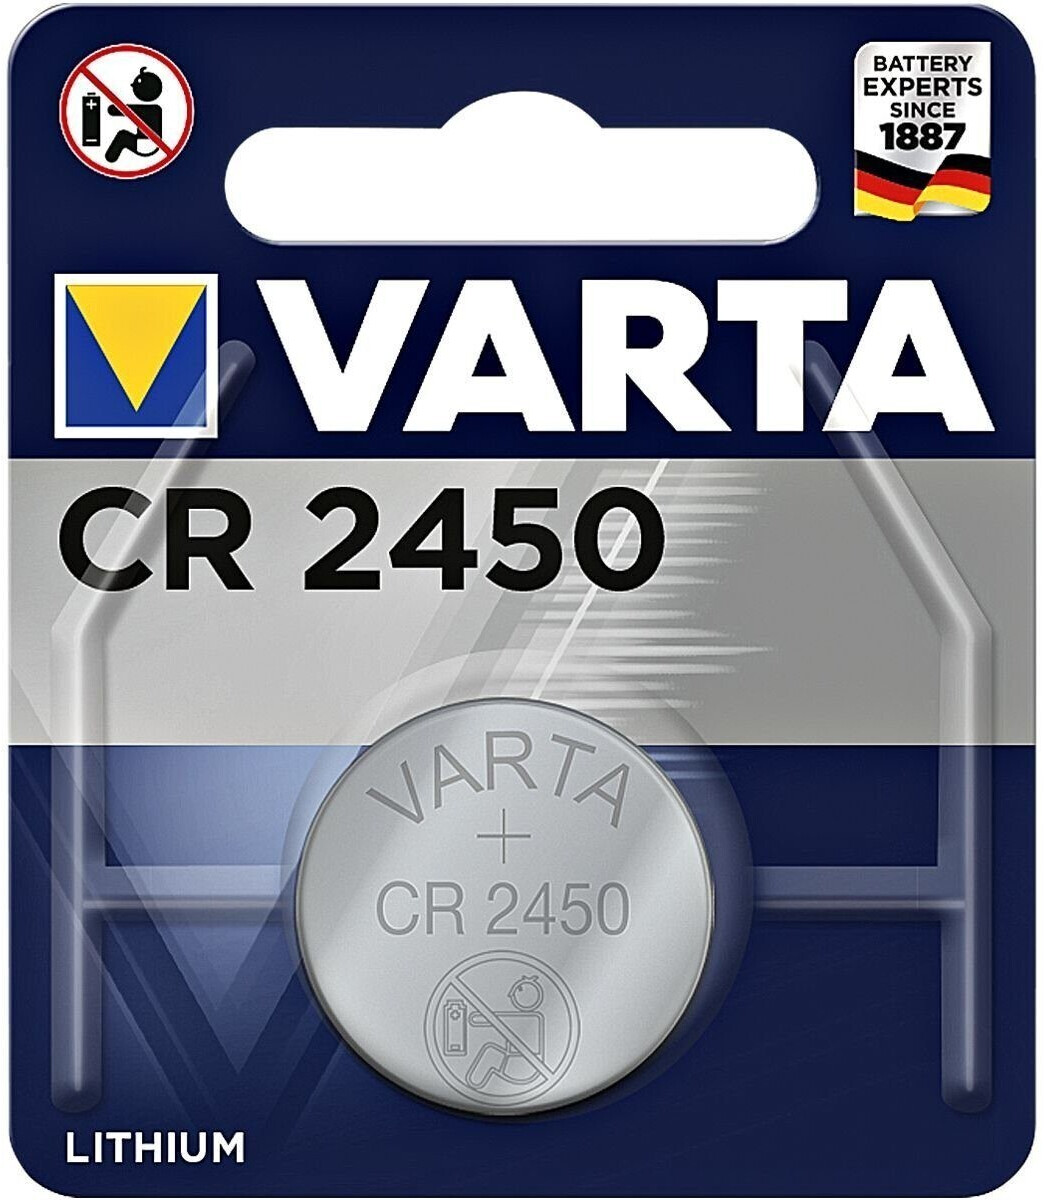 2 x CR2450, CR 2450 VARTA Batterien Uhr